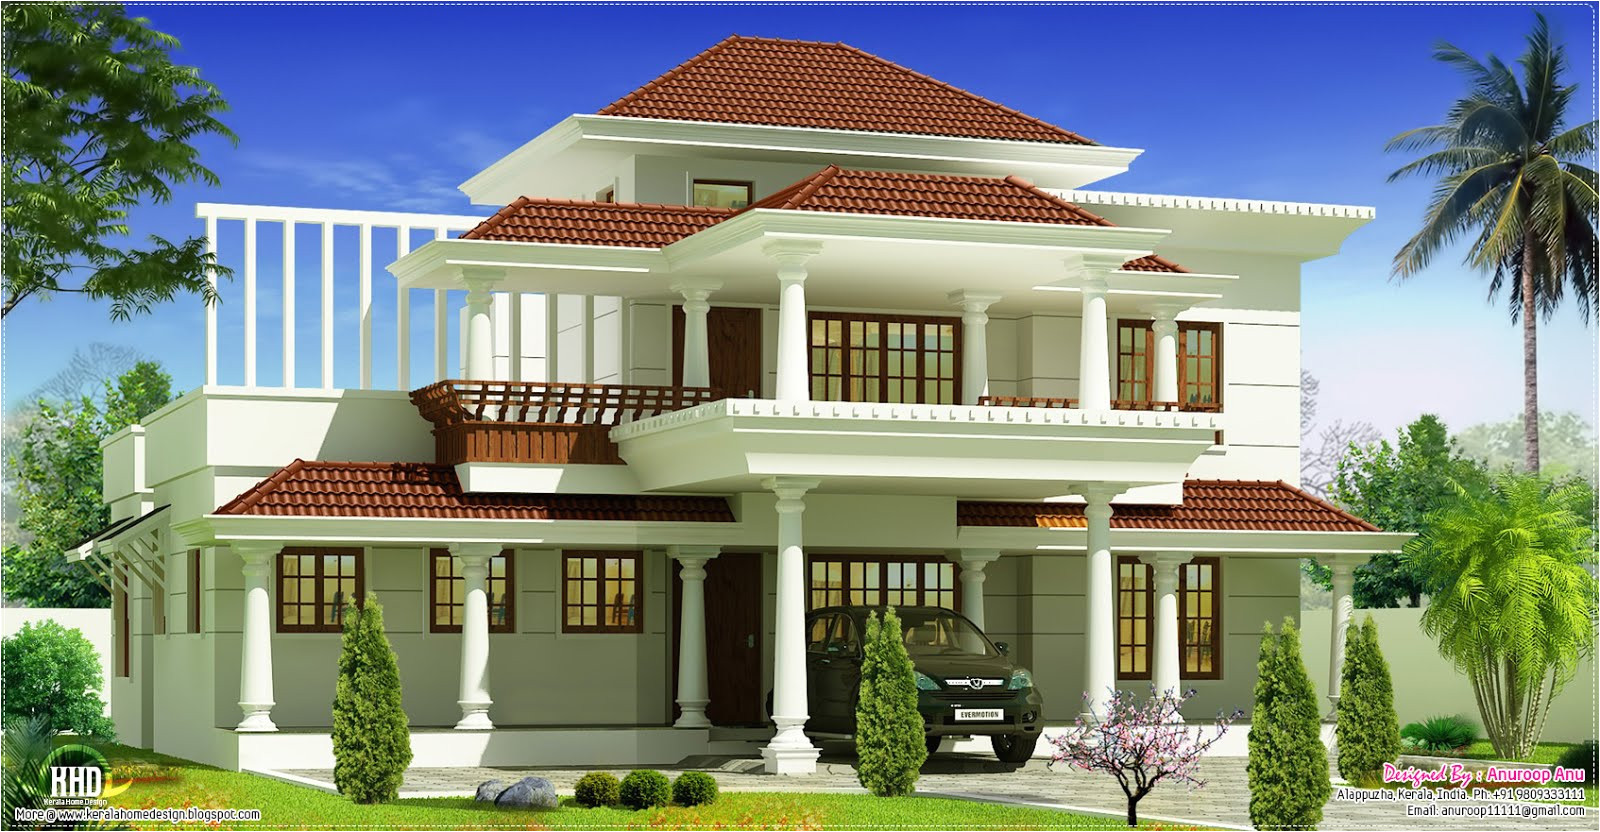 kerala house models